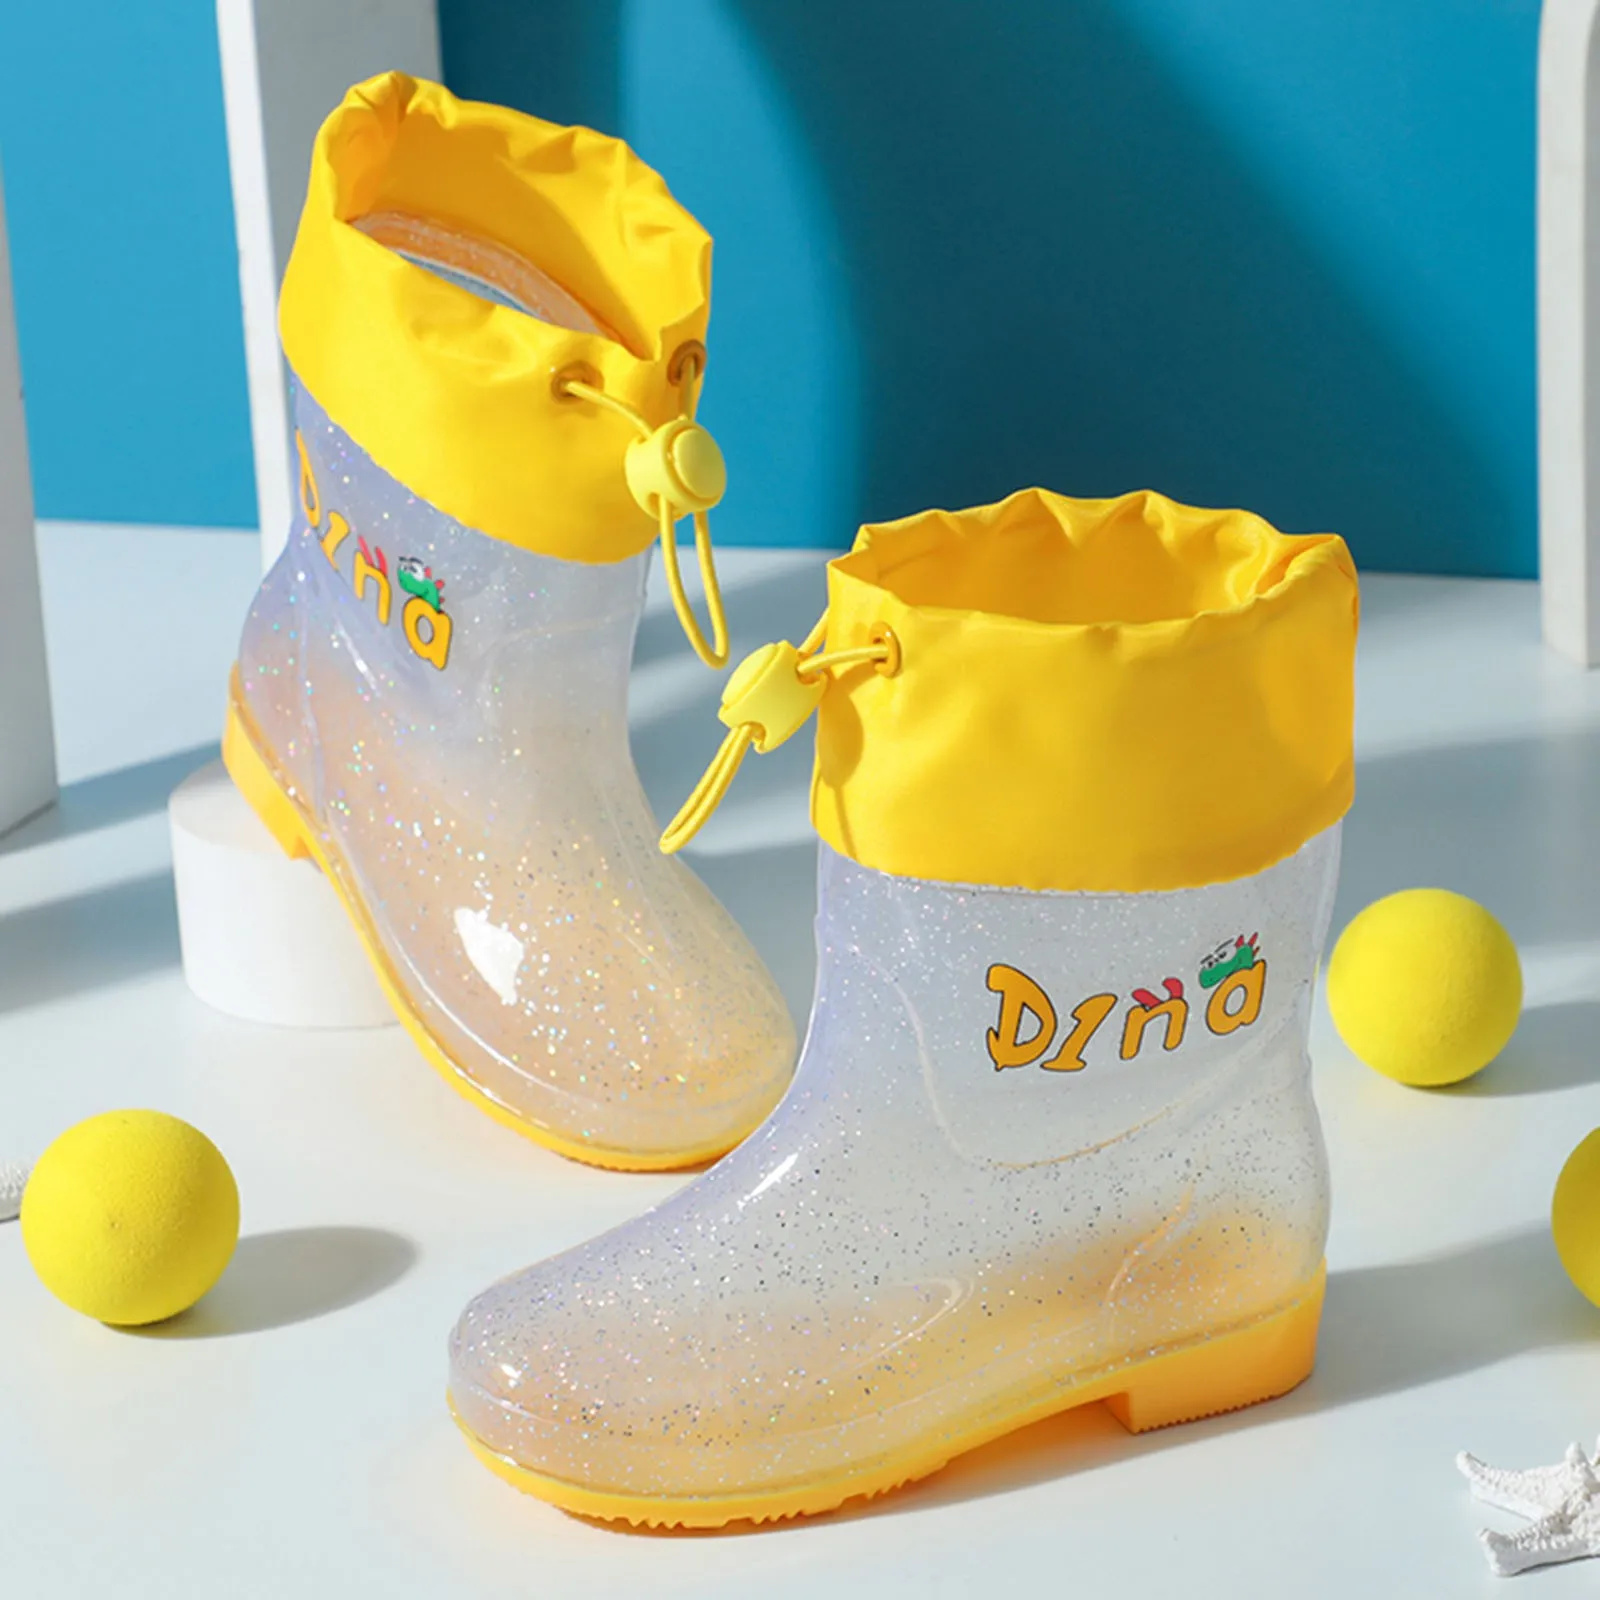 Новые Детские Непромокаемые ботинки для девочек и мальчиков, можно завязать Рот, Зашнуровать, Милые Мультяшные Водонепроницаемые Резиновые сапоги, Детские botas de bebé